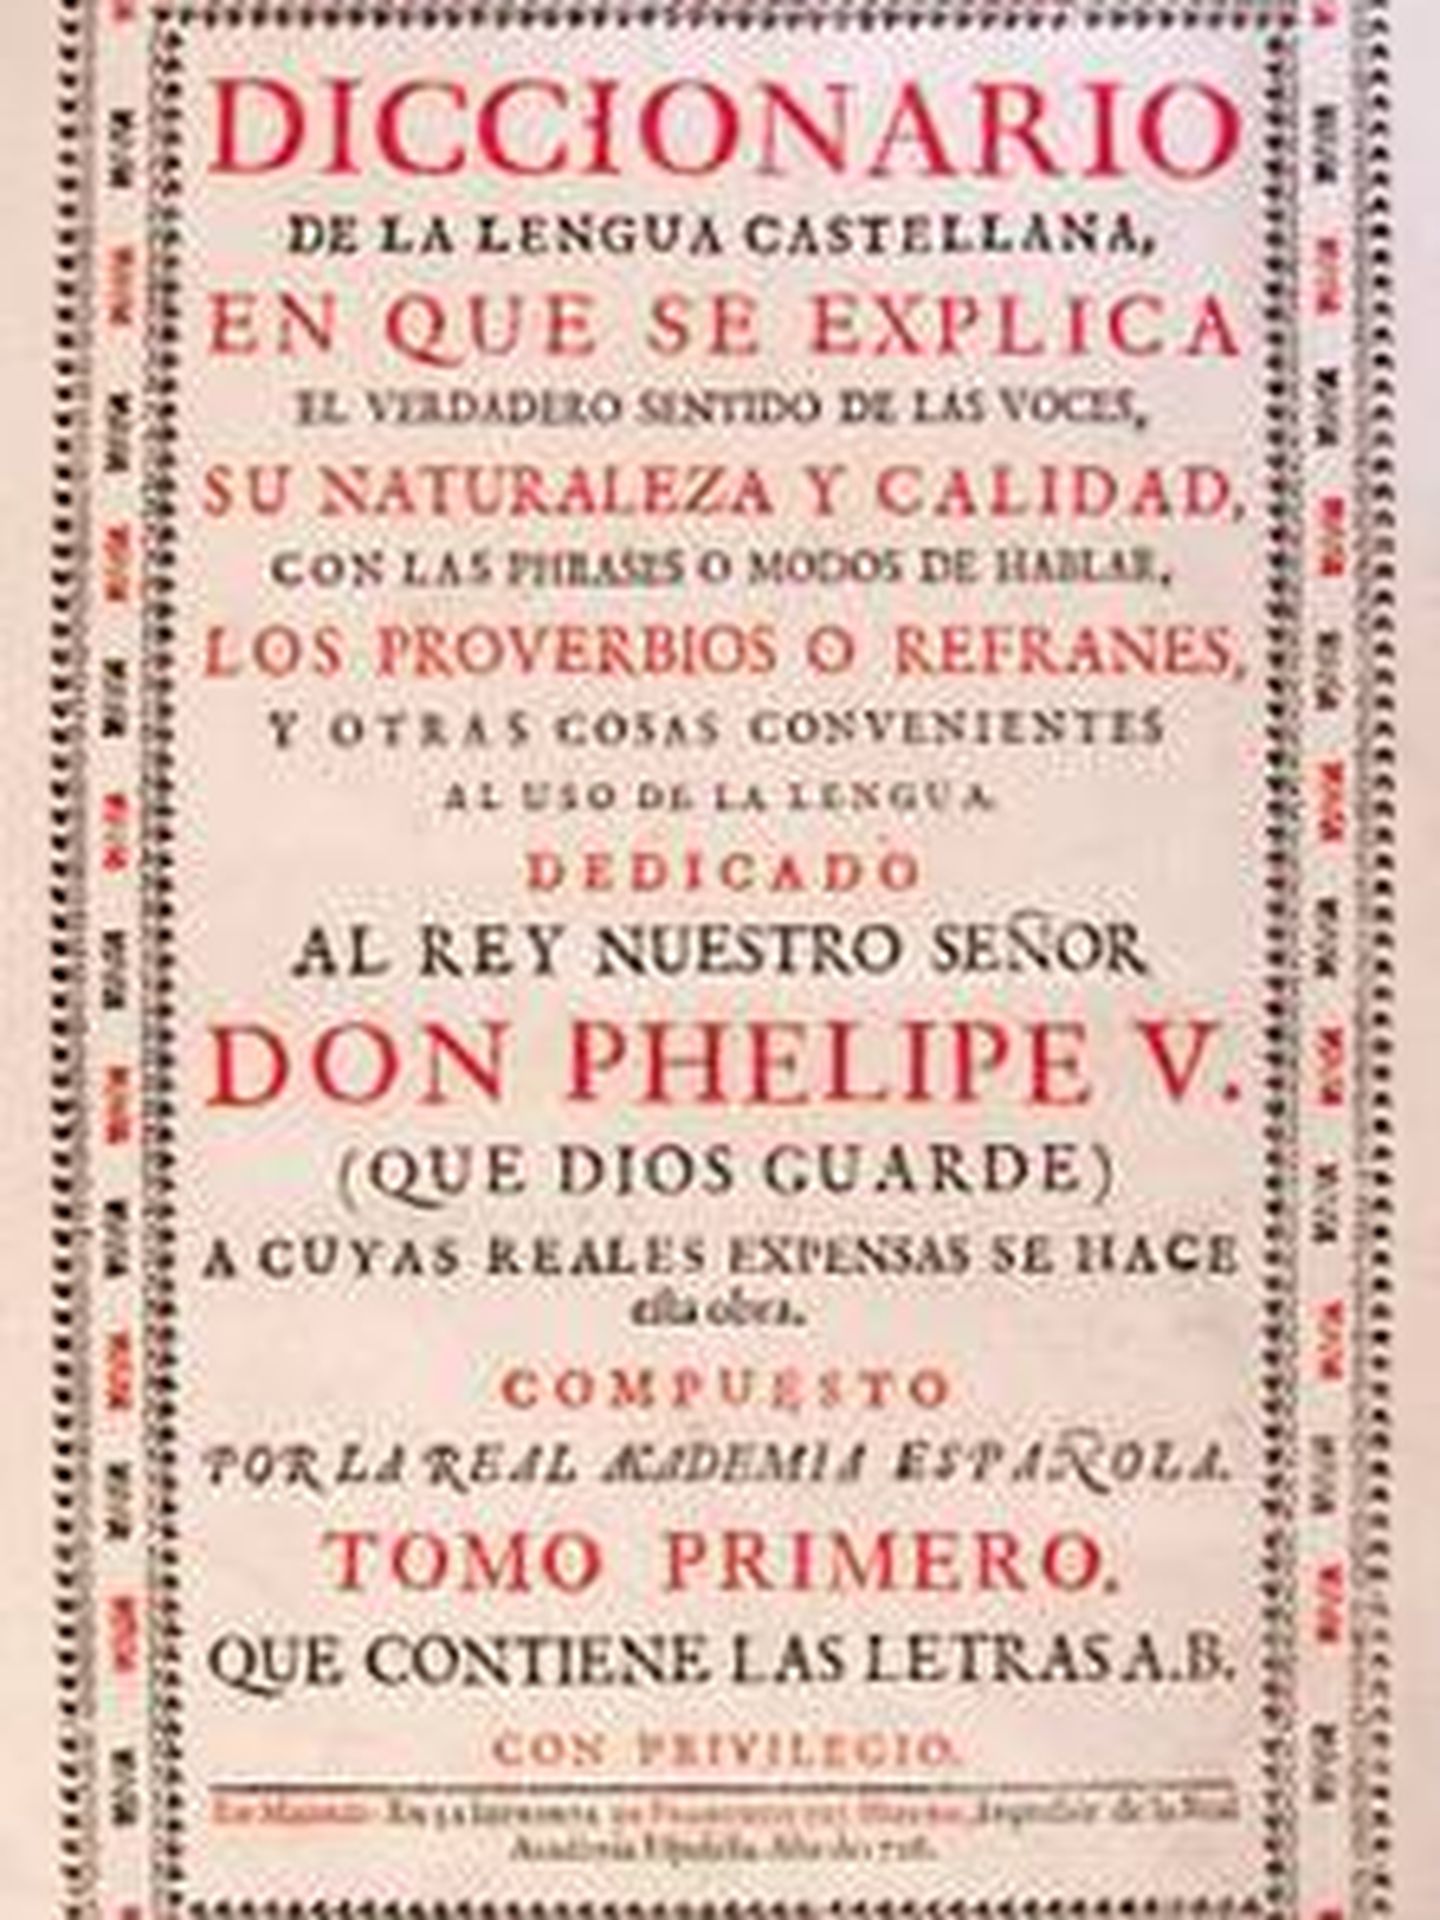 Diccionario de la RAE de 1726. (RAE)